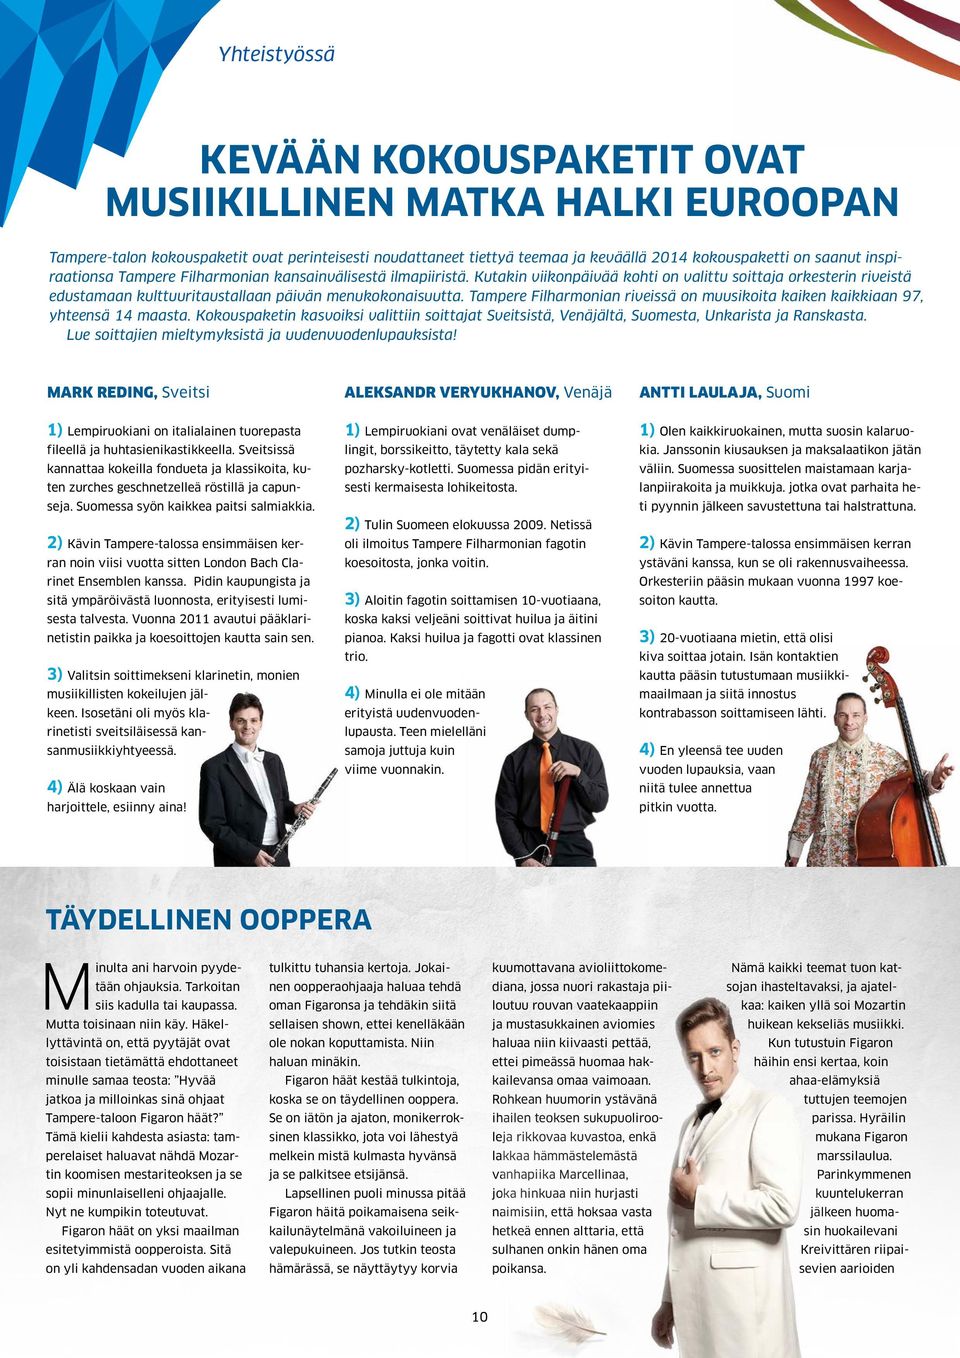 Tampere Filharmonian riveissä on muusikoita kaiken kaikkiaan 97, yhteensä 14 maasta. Kokouspaketin kasvoiksi valittiin soittajat Sveitsistä, Venäjältä, Suomesta, Unkarista ja Ranskasta.